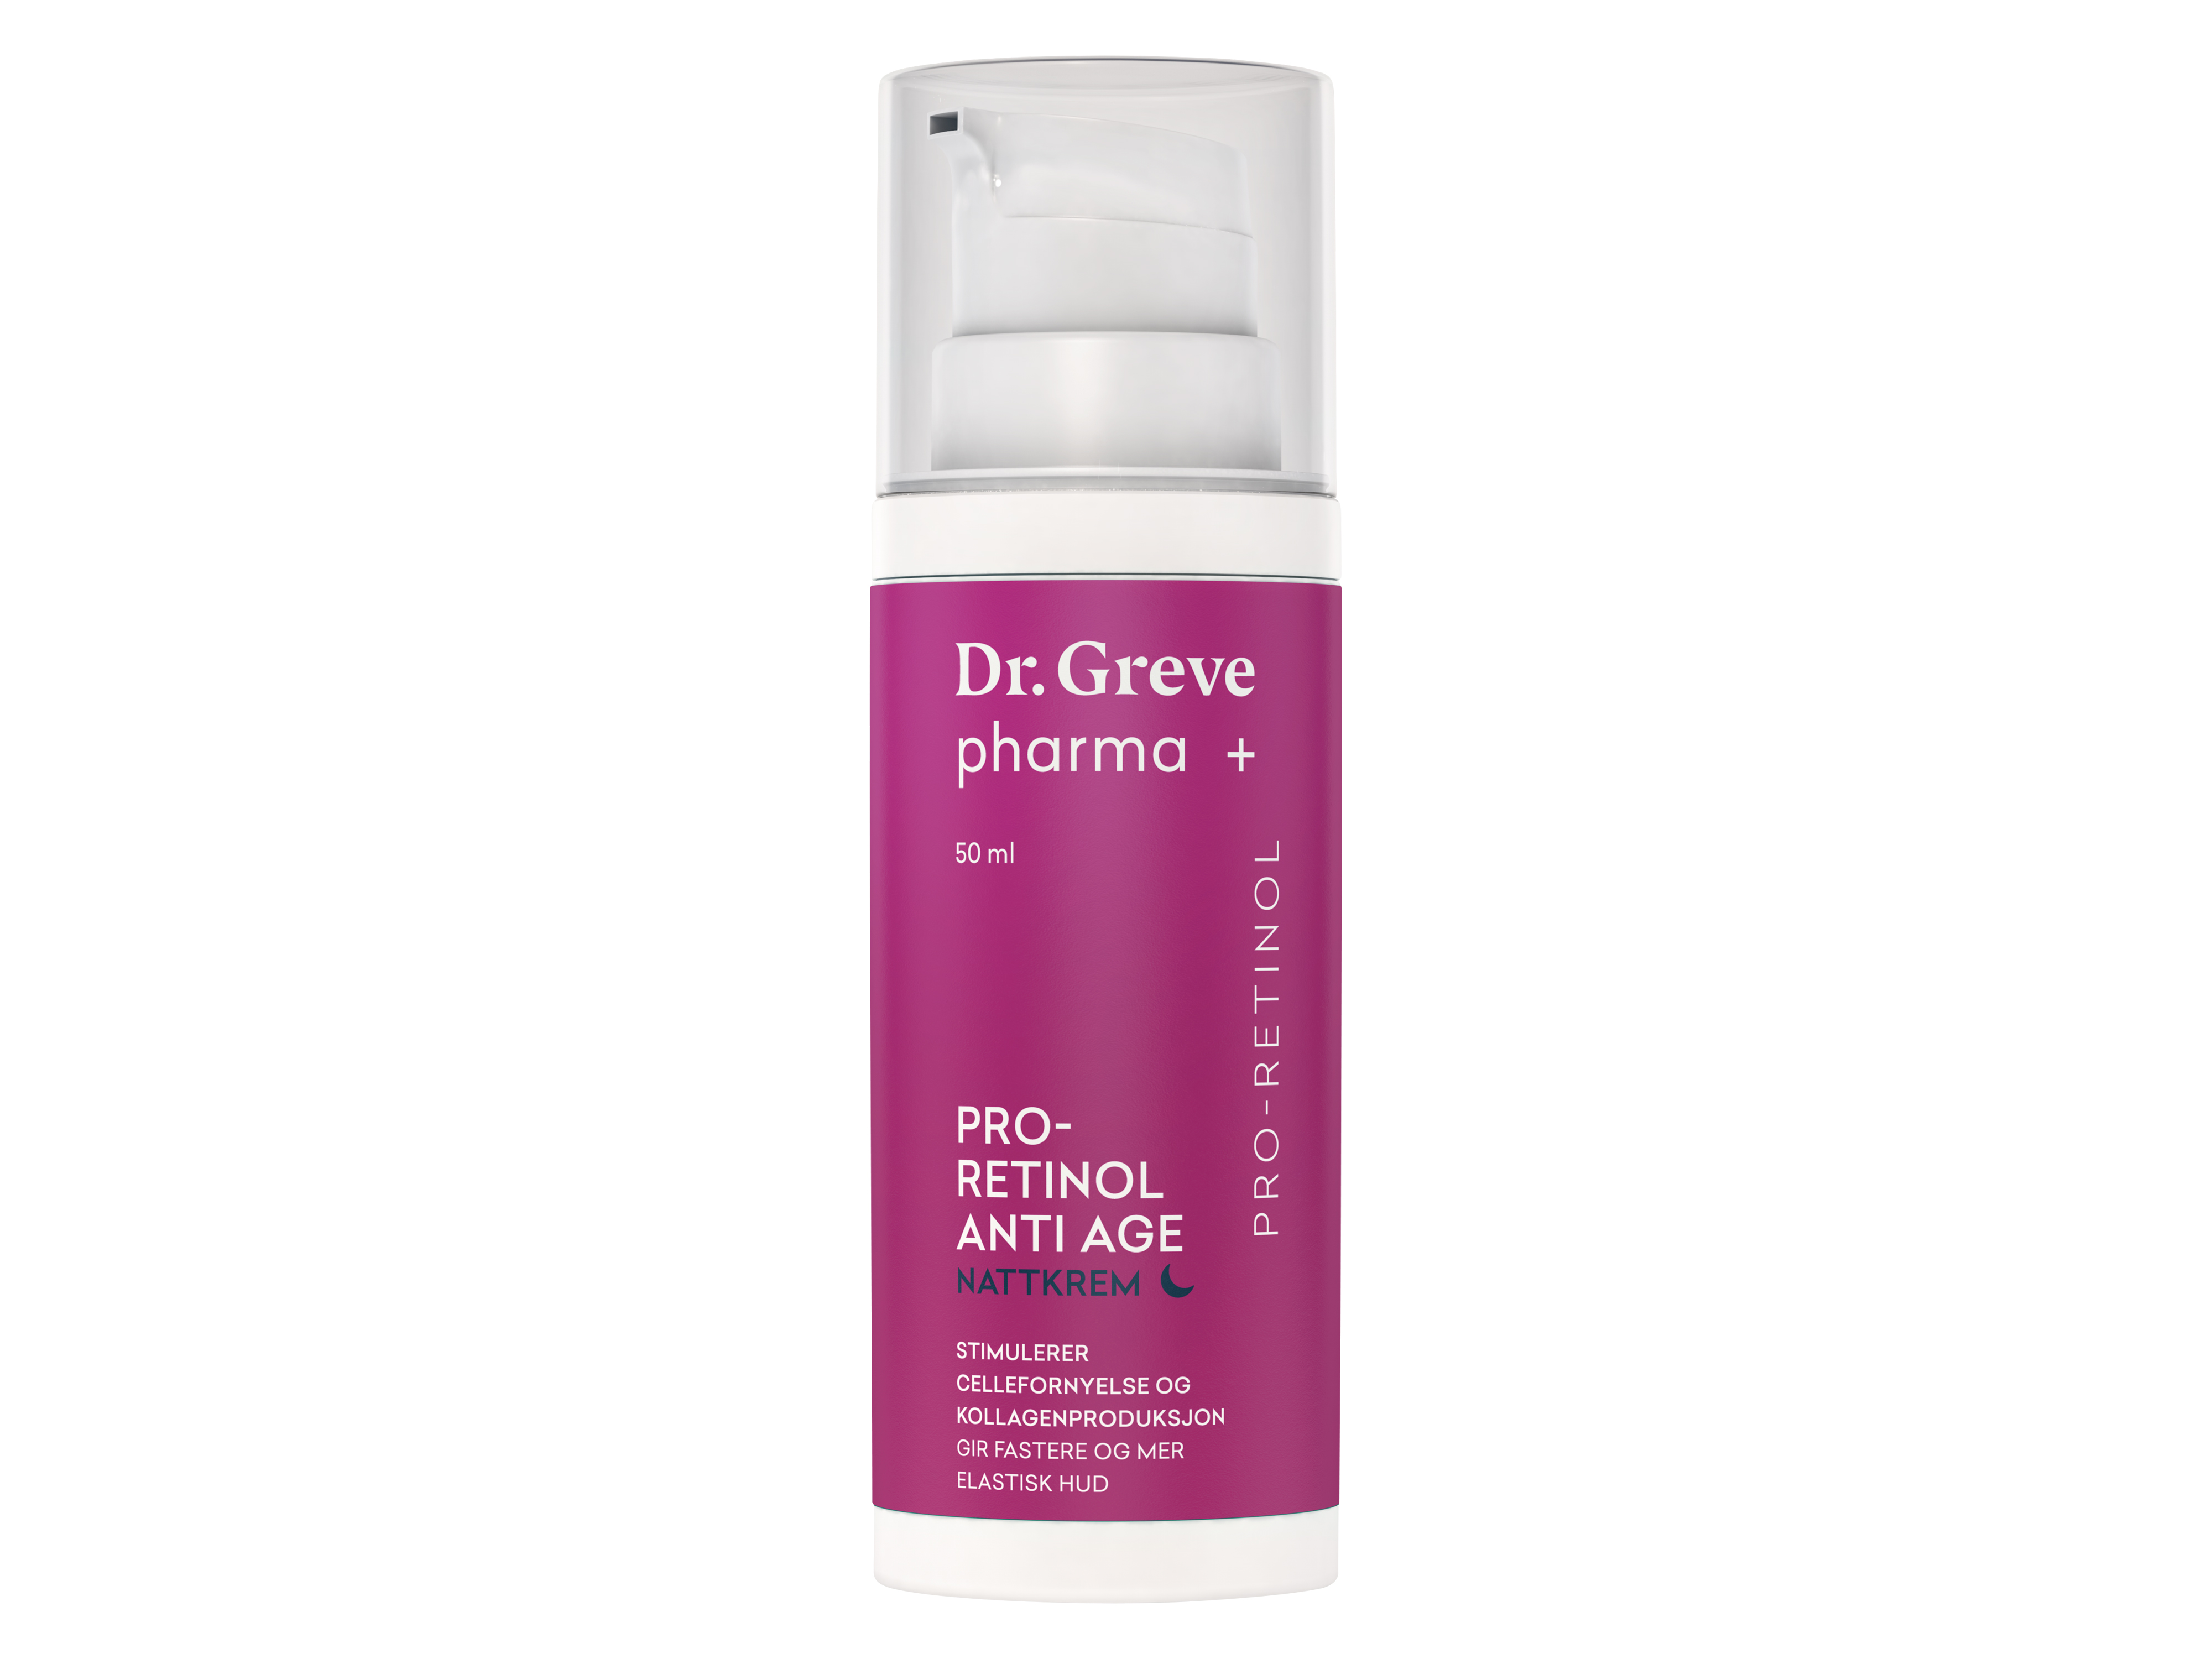 Dr. Greve Pharma Pro-Retinol Anti Age Nattkrem, 50 ml